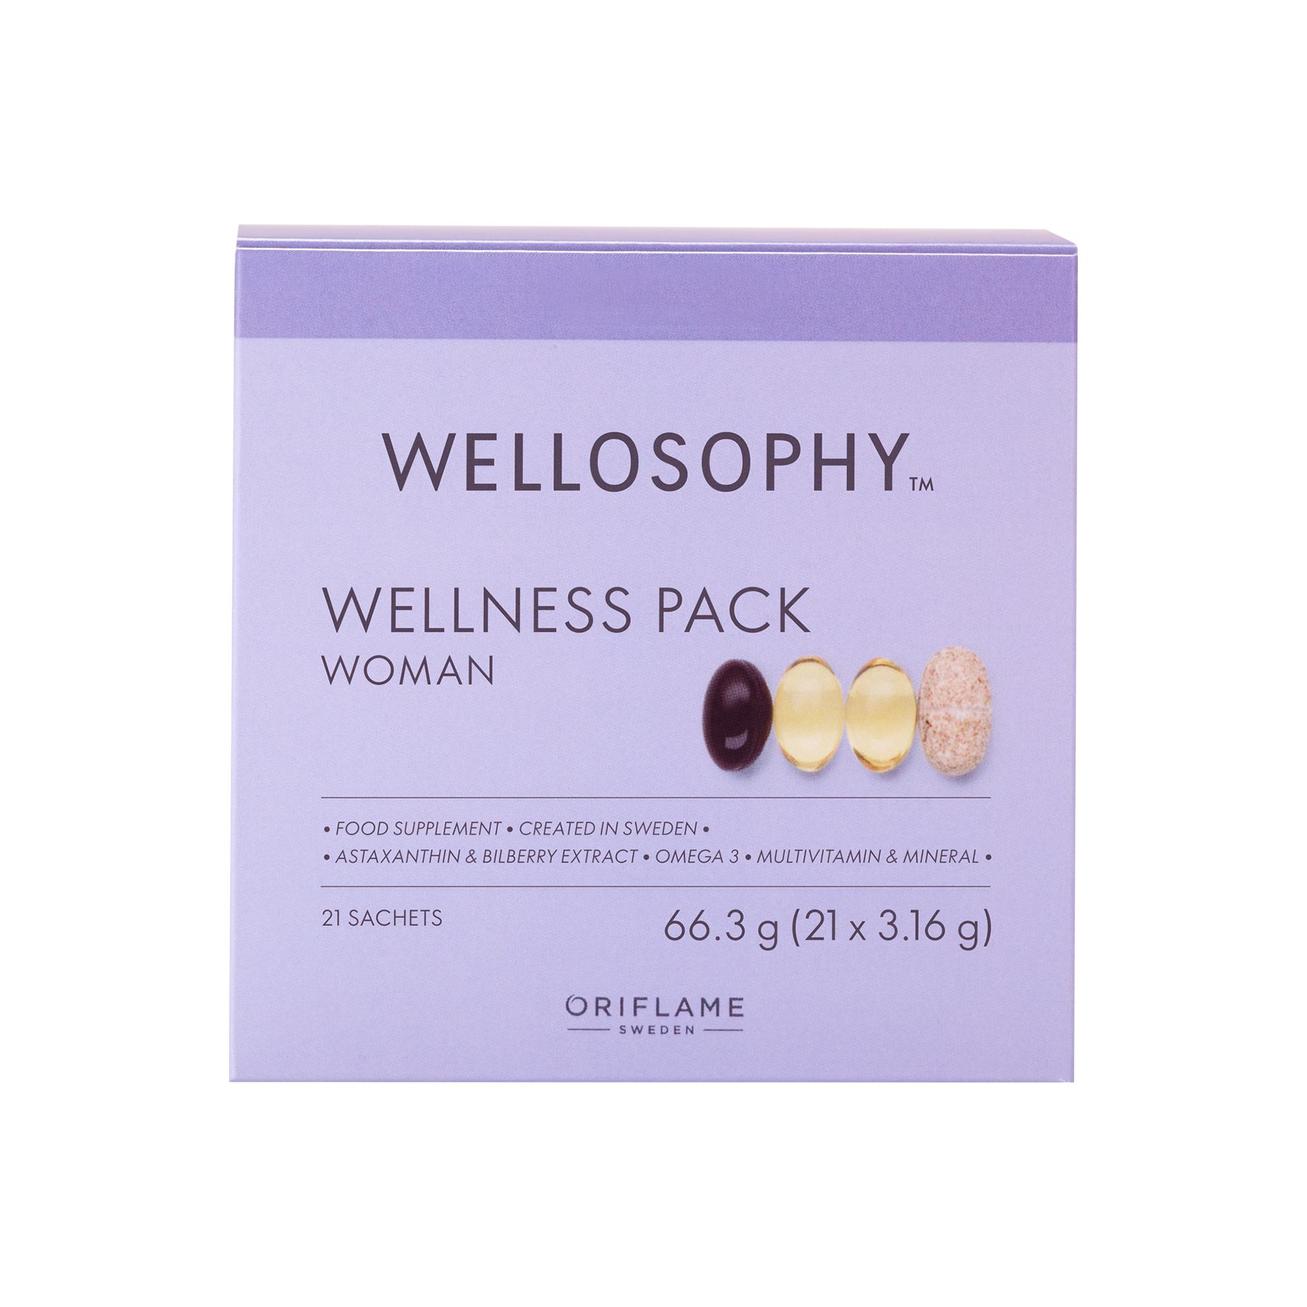 Wellosophy Wellness-csomag nőknek kínálat, 11499 Ft a Oriflame -ben